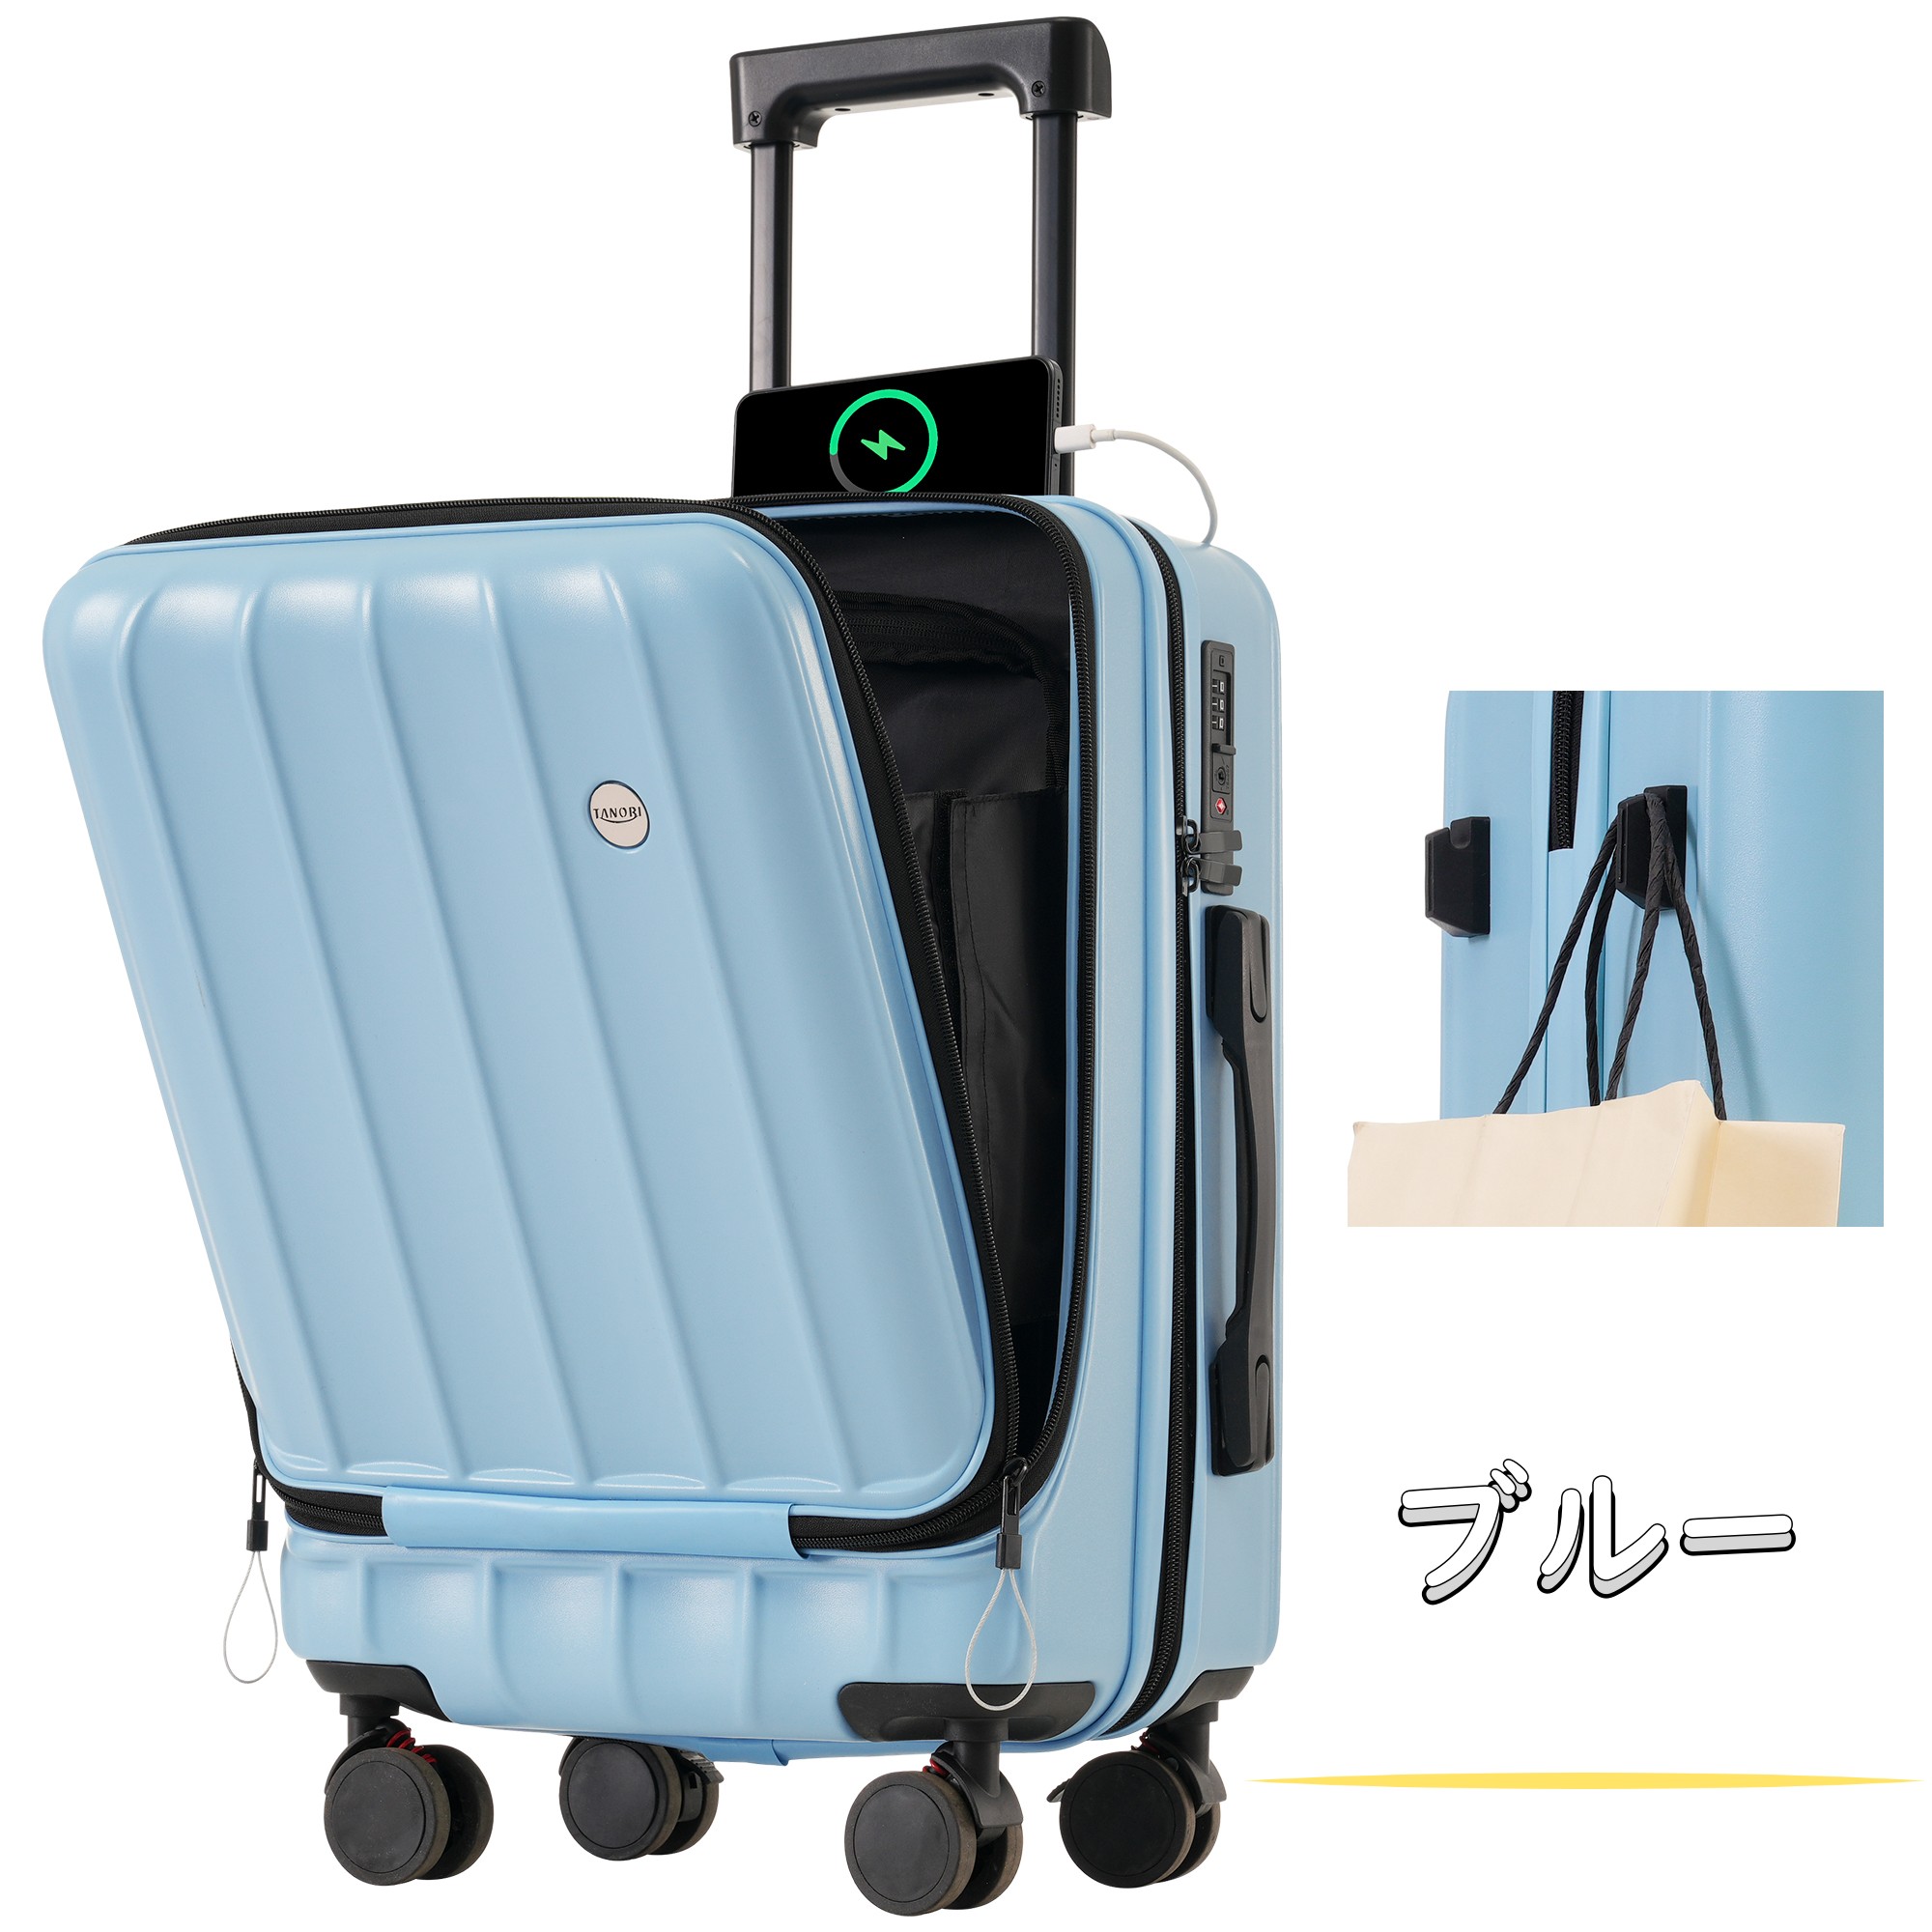 スーツケース sサイズ フロントオープン 機内持込み mサイズ lサイズ キャリーケース キャリーバッグ フック付 2泊3日 超軽量 ストッパー付き  TANOBI